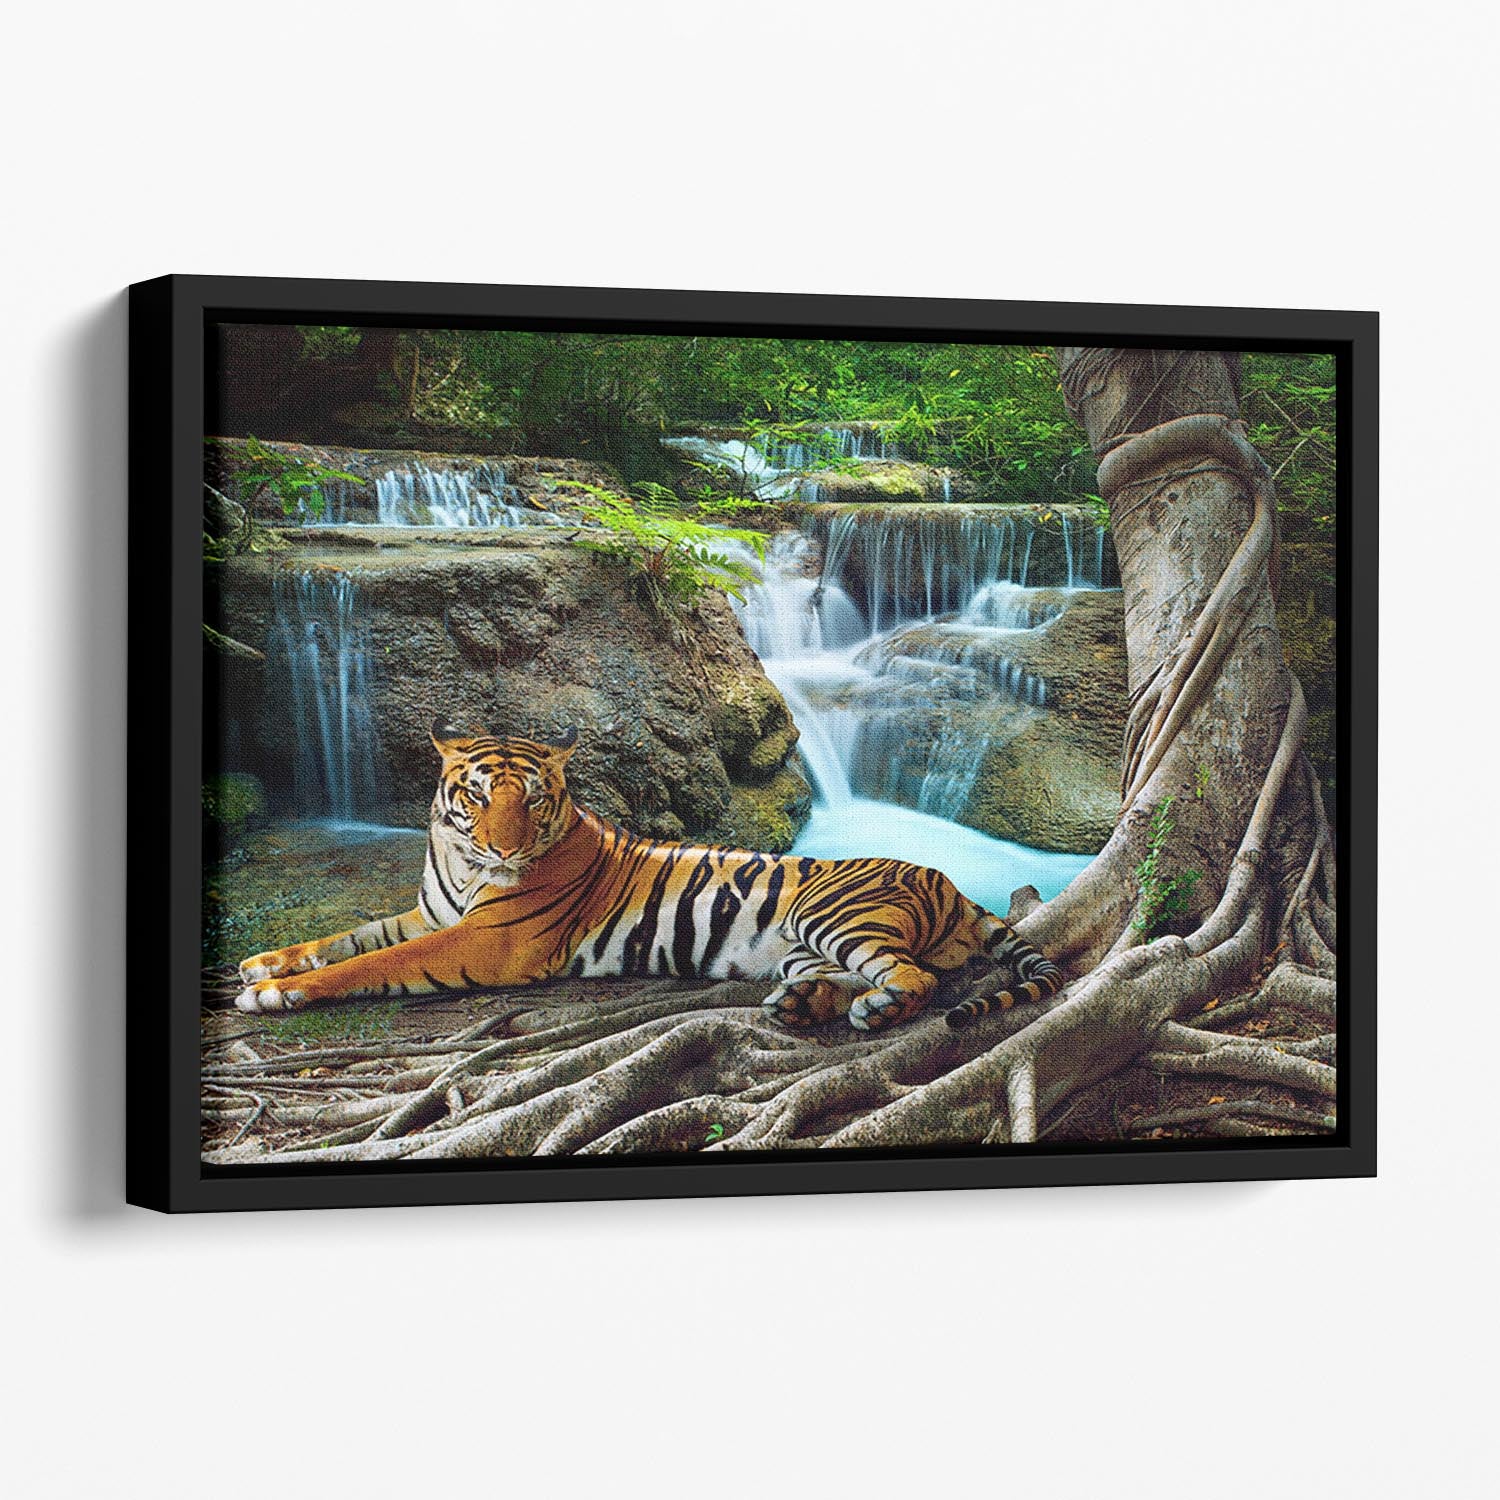 Indochina tiger Floating Framed Canvas - Canvas Art Rocks - 1